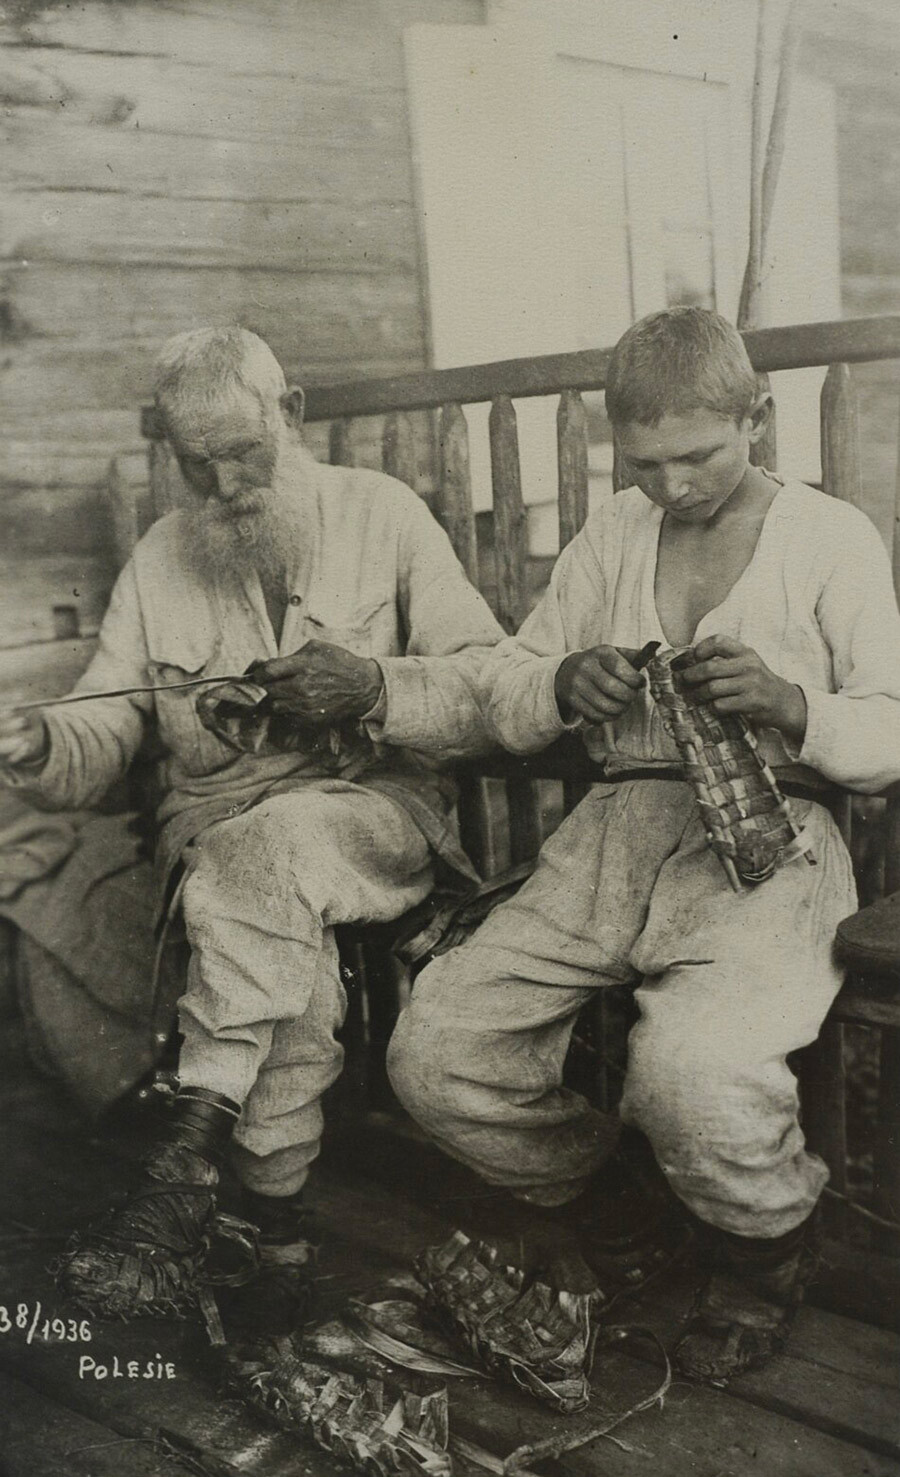 Un vieil homme et un garçon fabriquant des laptis (chaussures russes traditionnelles fabriquées à partir de fibre de bouleau), 1936